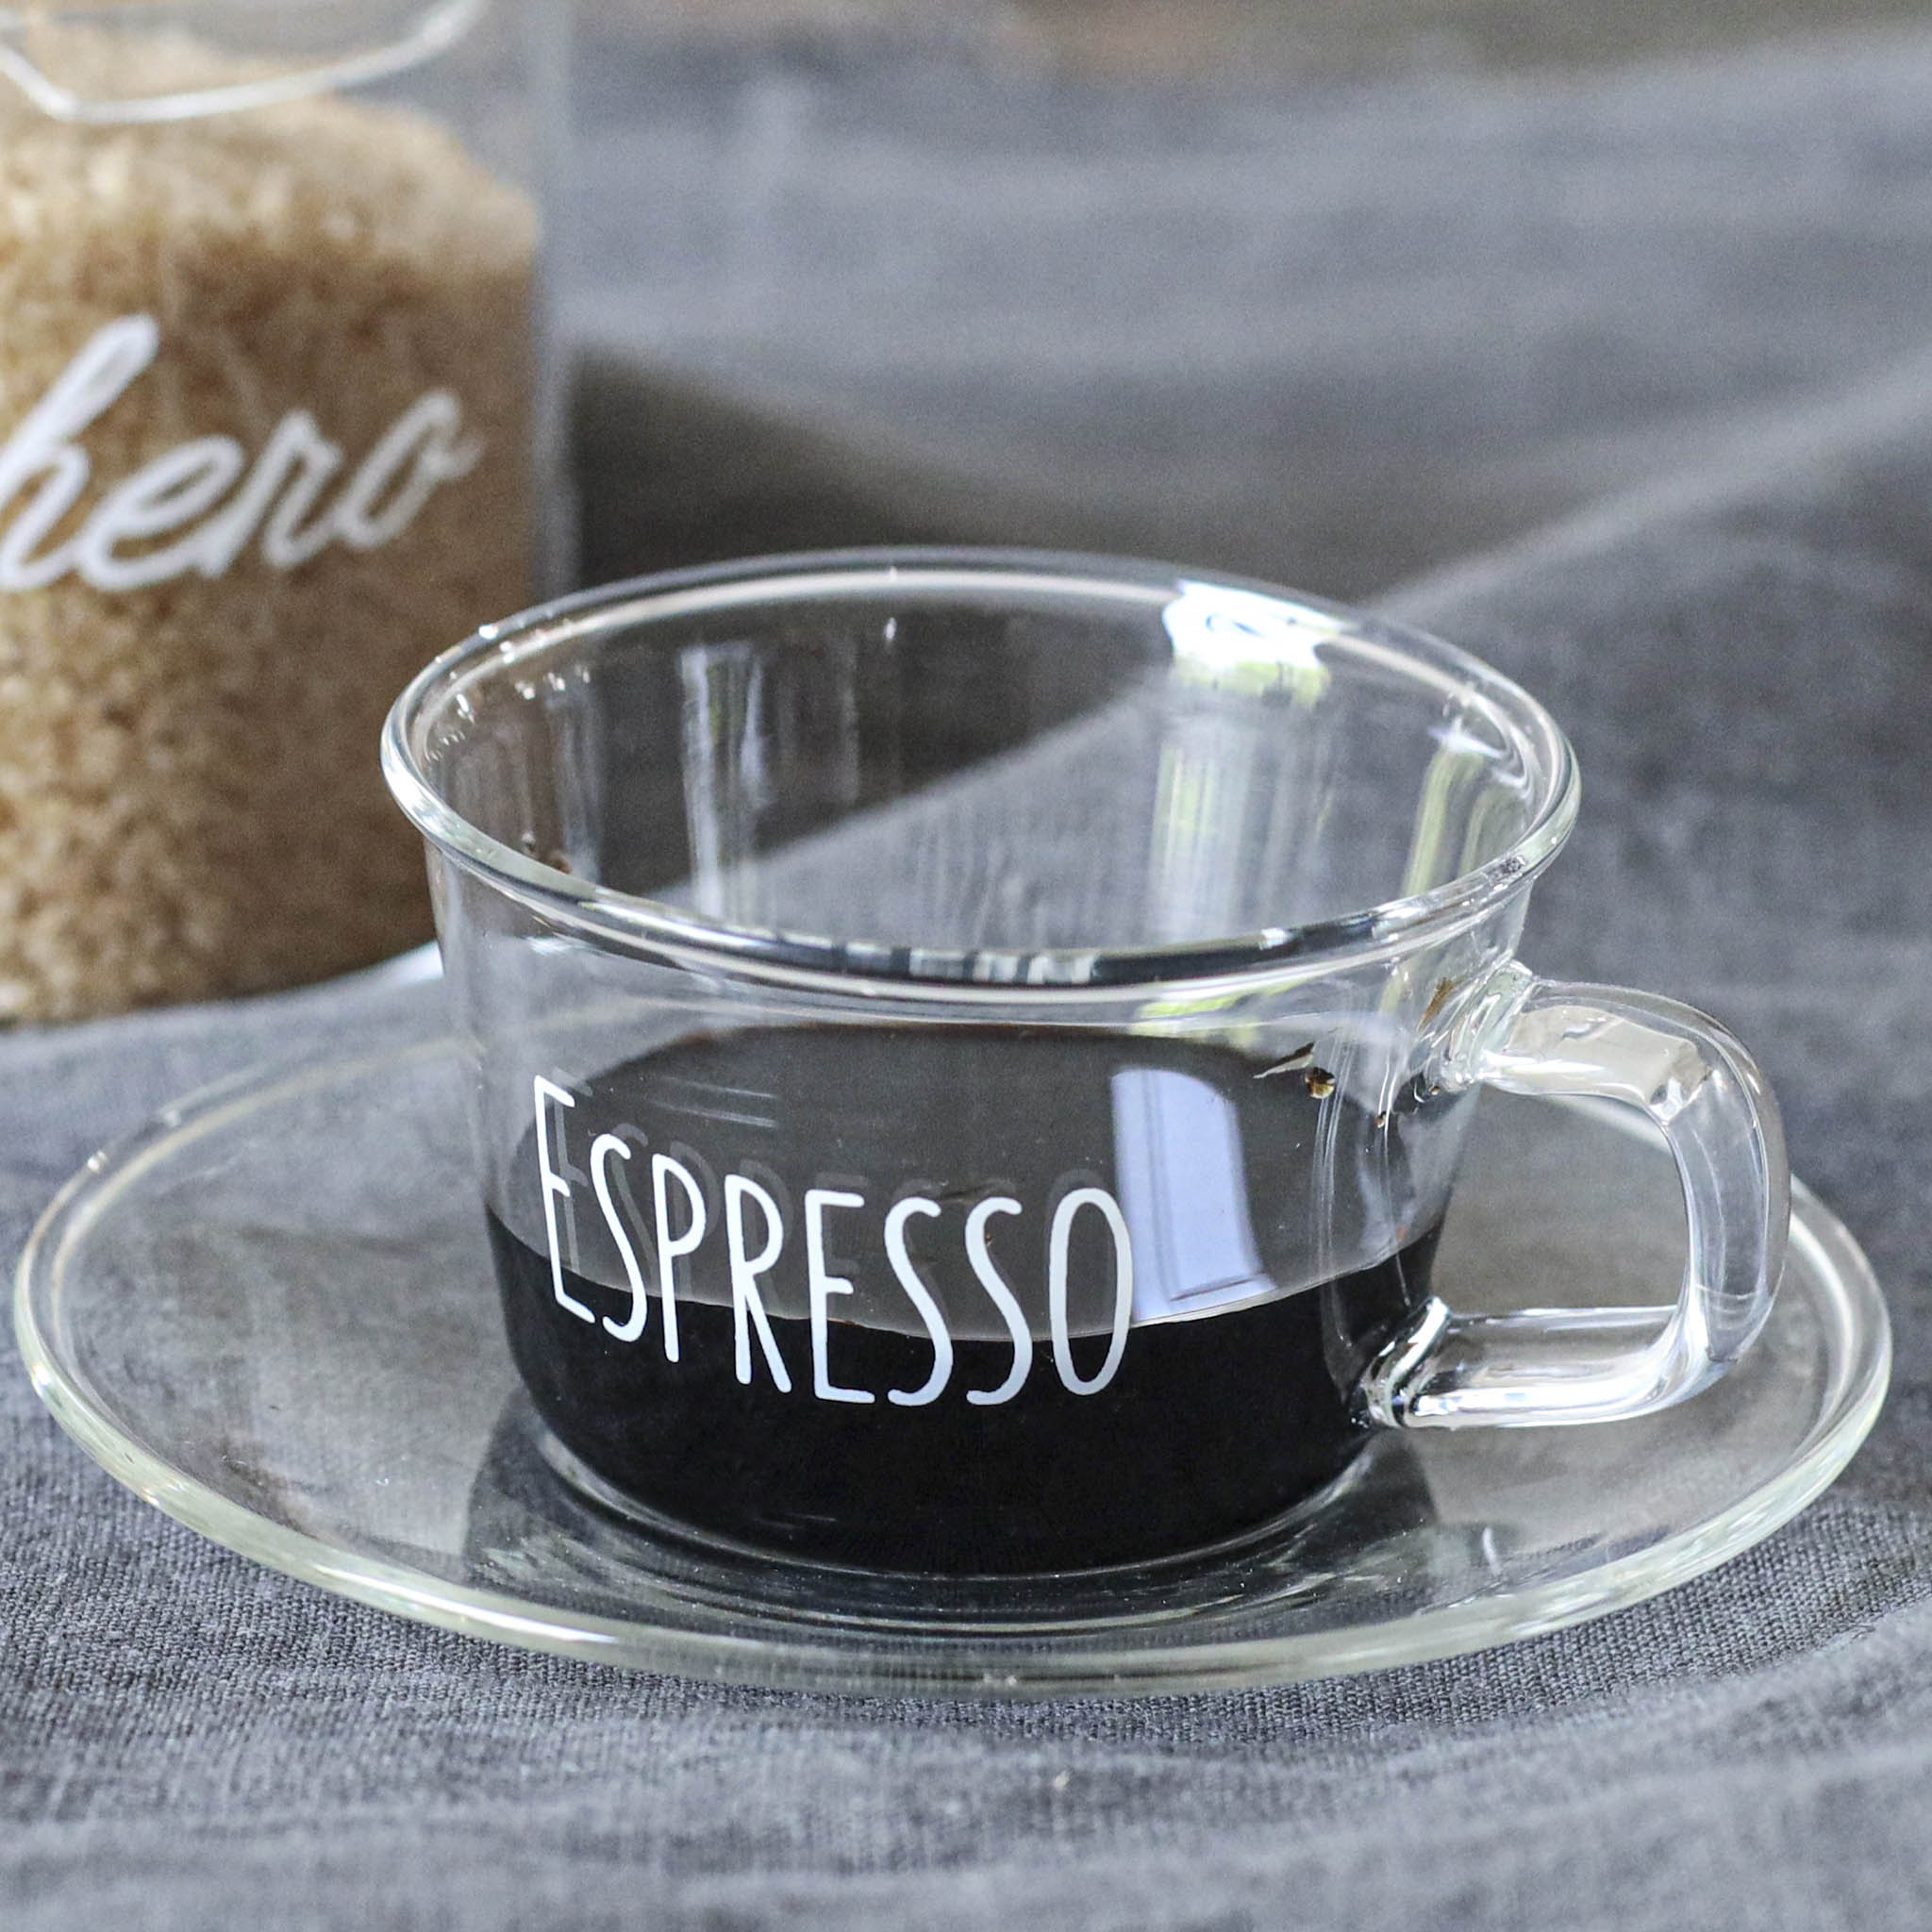 Set 2 Espresso Espresso cups